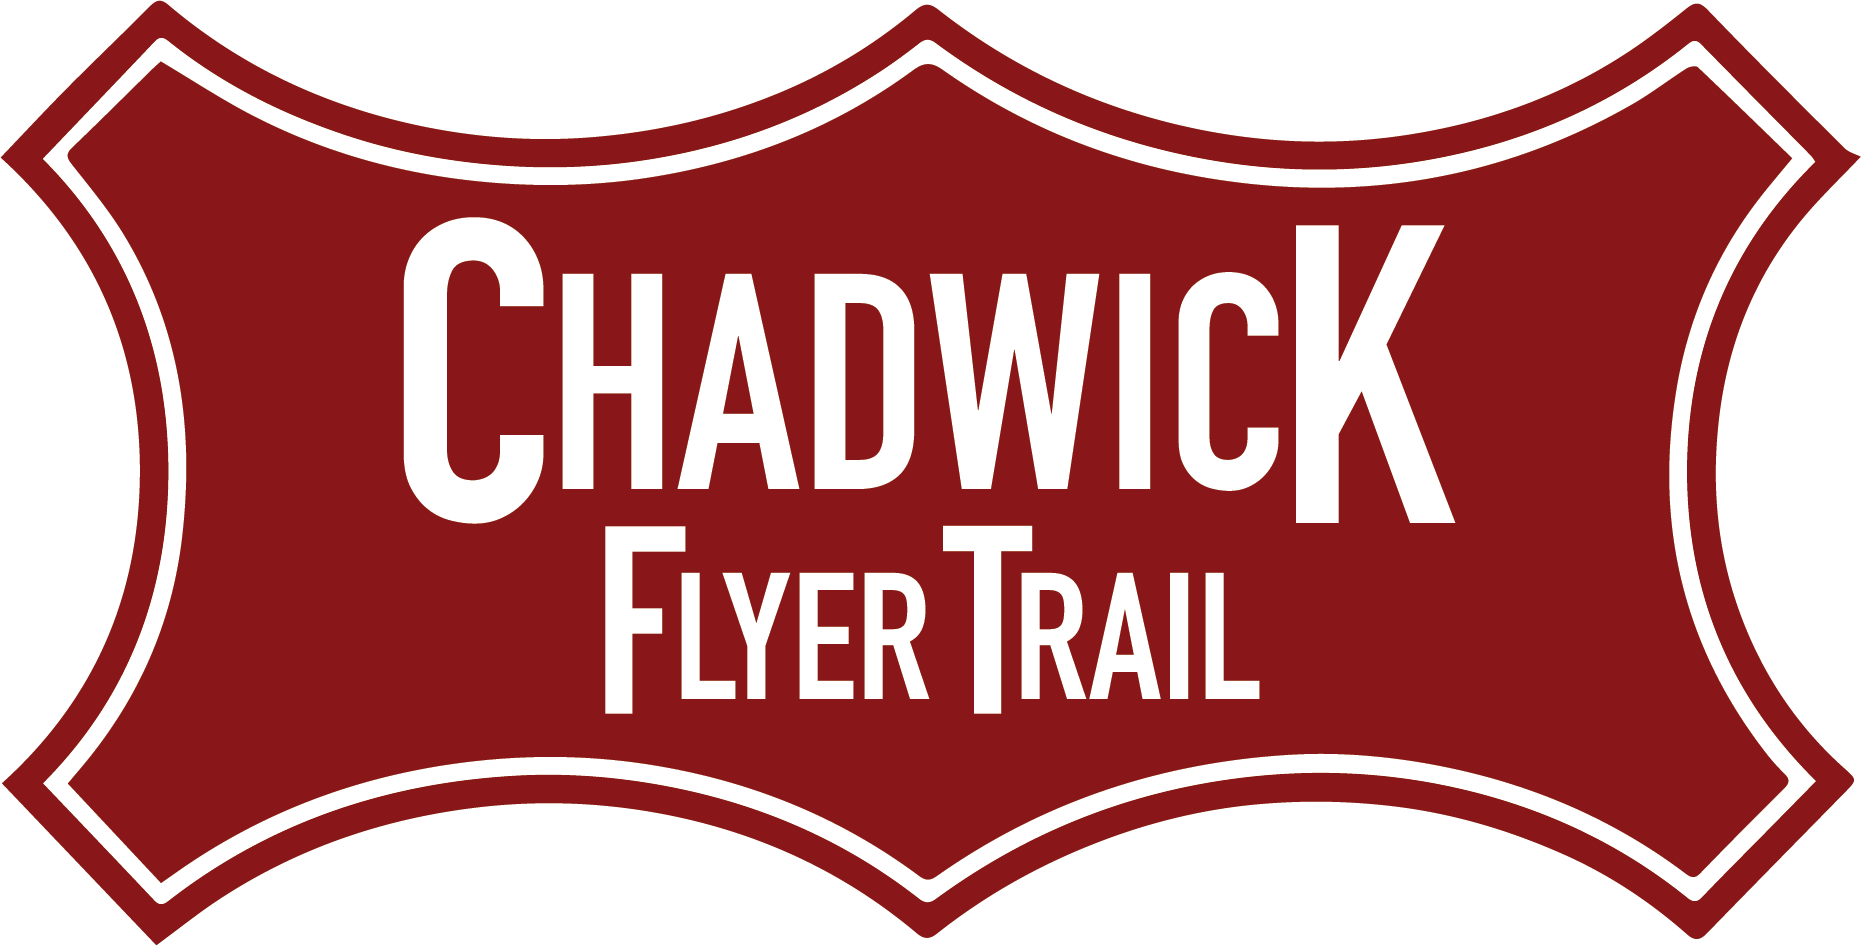 chadwick flyer trail logo no bar